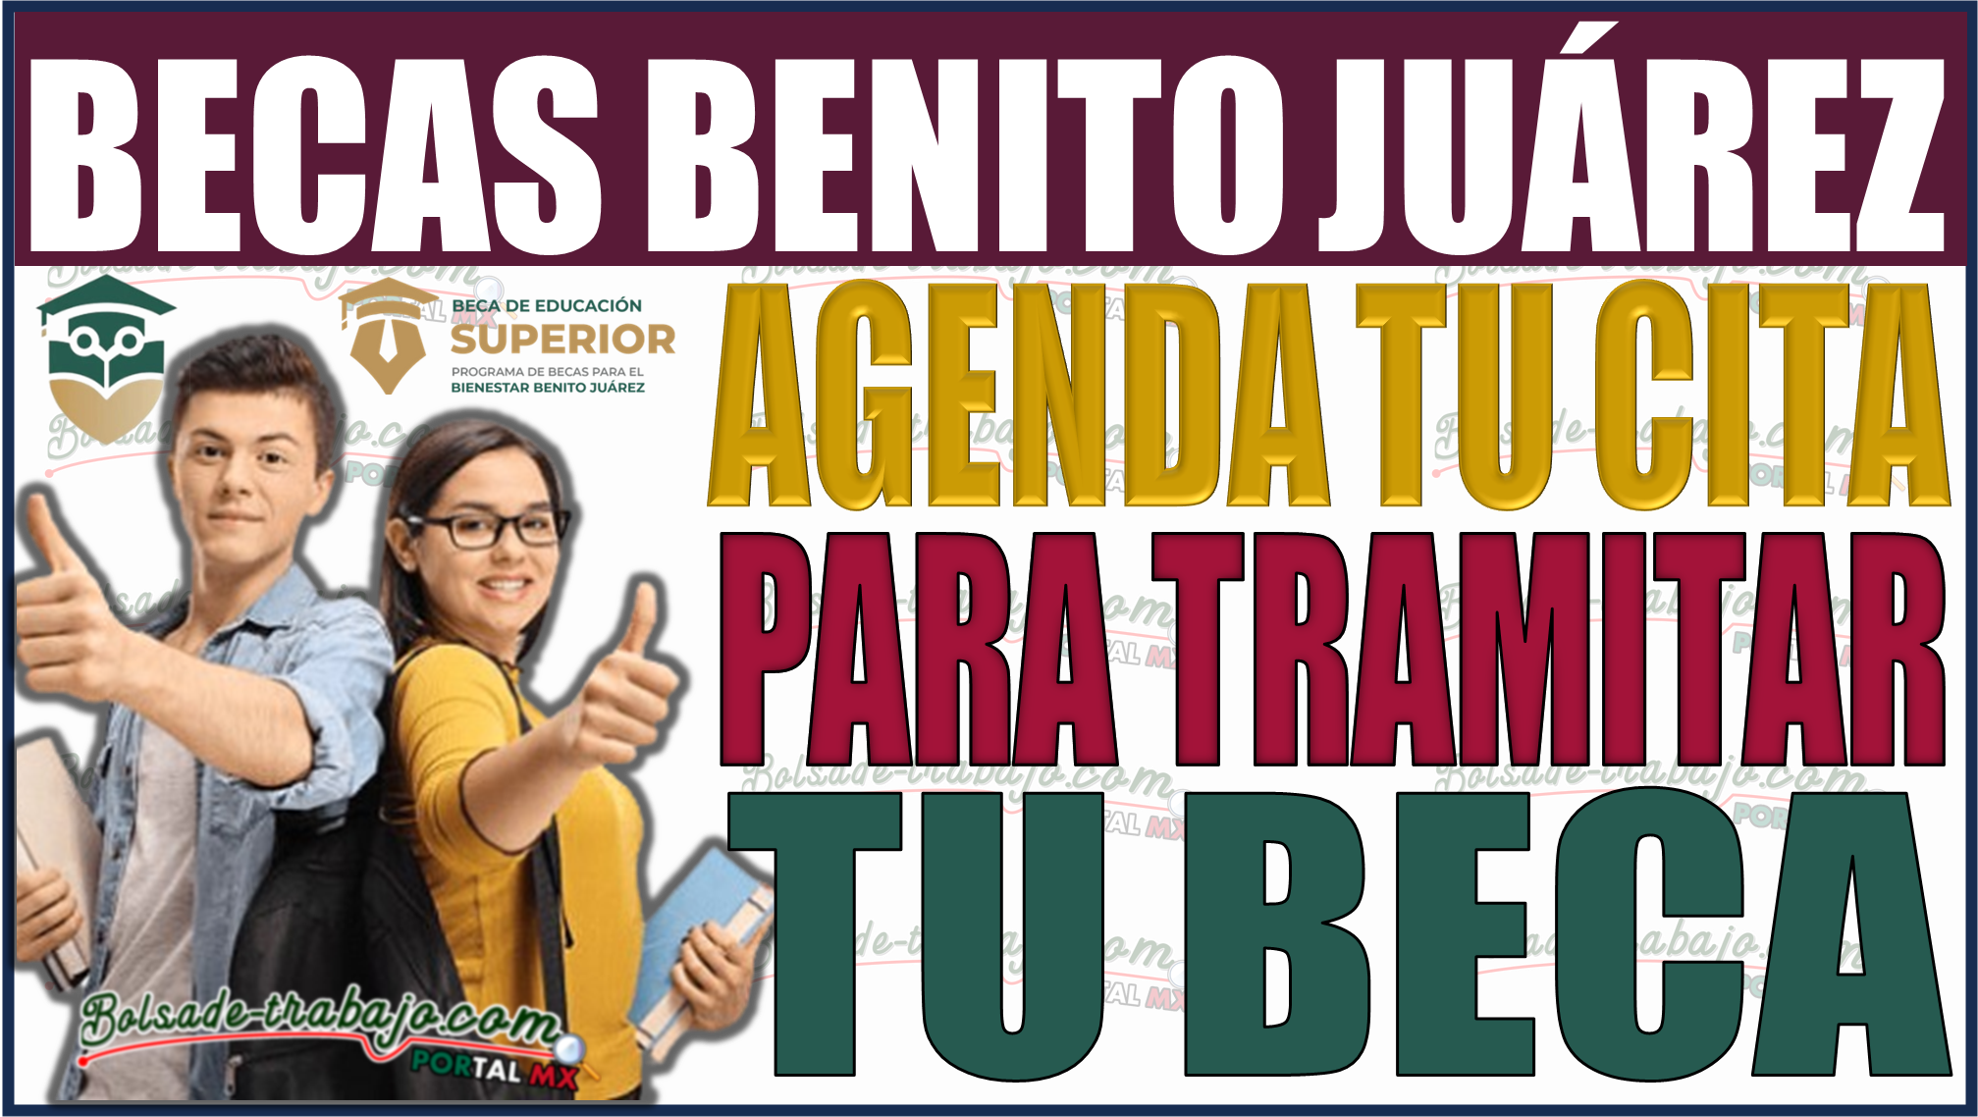 ¡Agenda tu cita para la Beca Bienestar Benito Juárez de manera fácil y rápida!